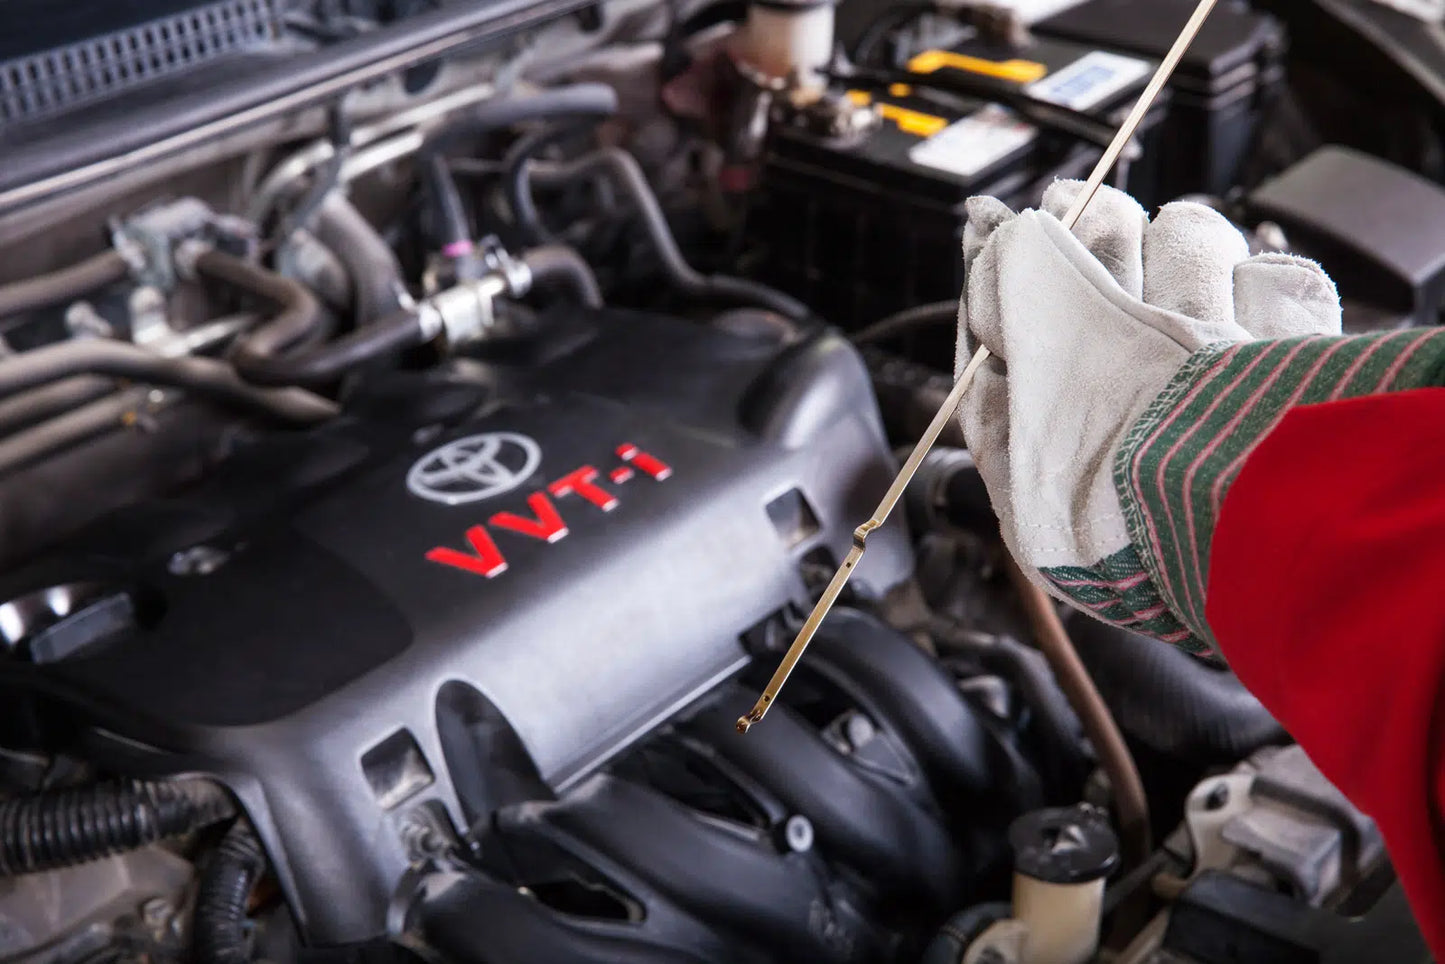 Toyota FE CVT Genuine OEM Transmission Fluid – 4 Litres